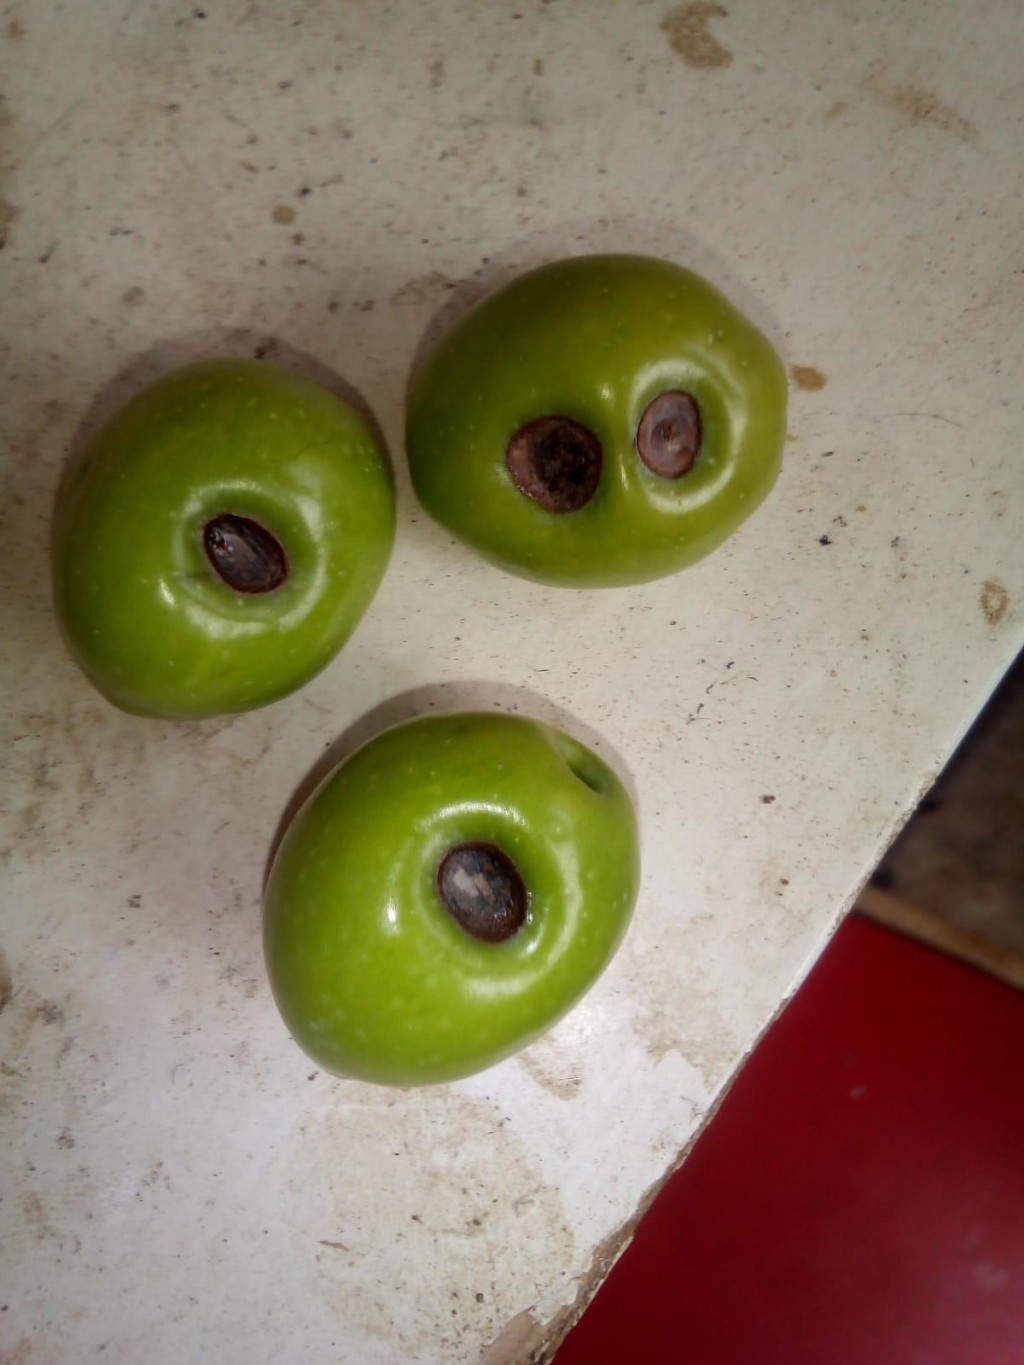 Ulupljeni plodovi - fotografija koju nam je poslao maslinar Sever